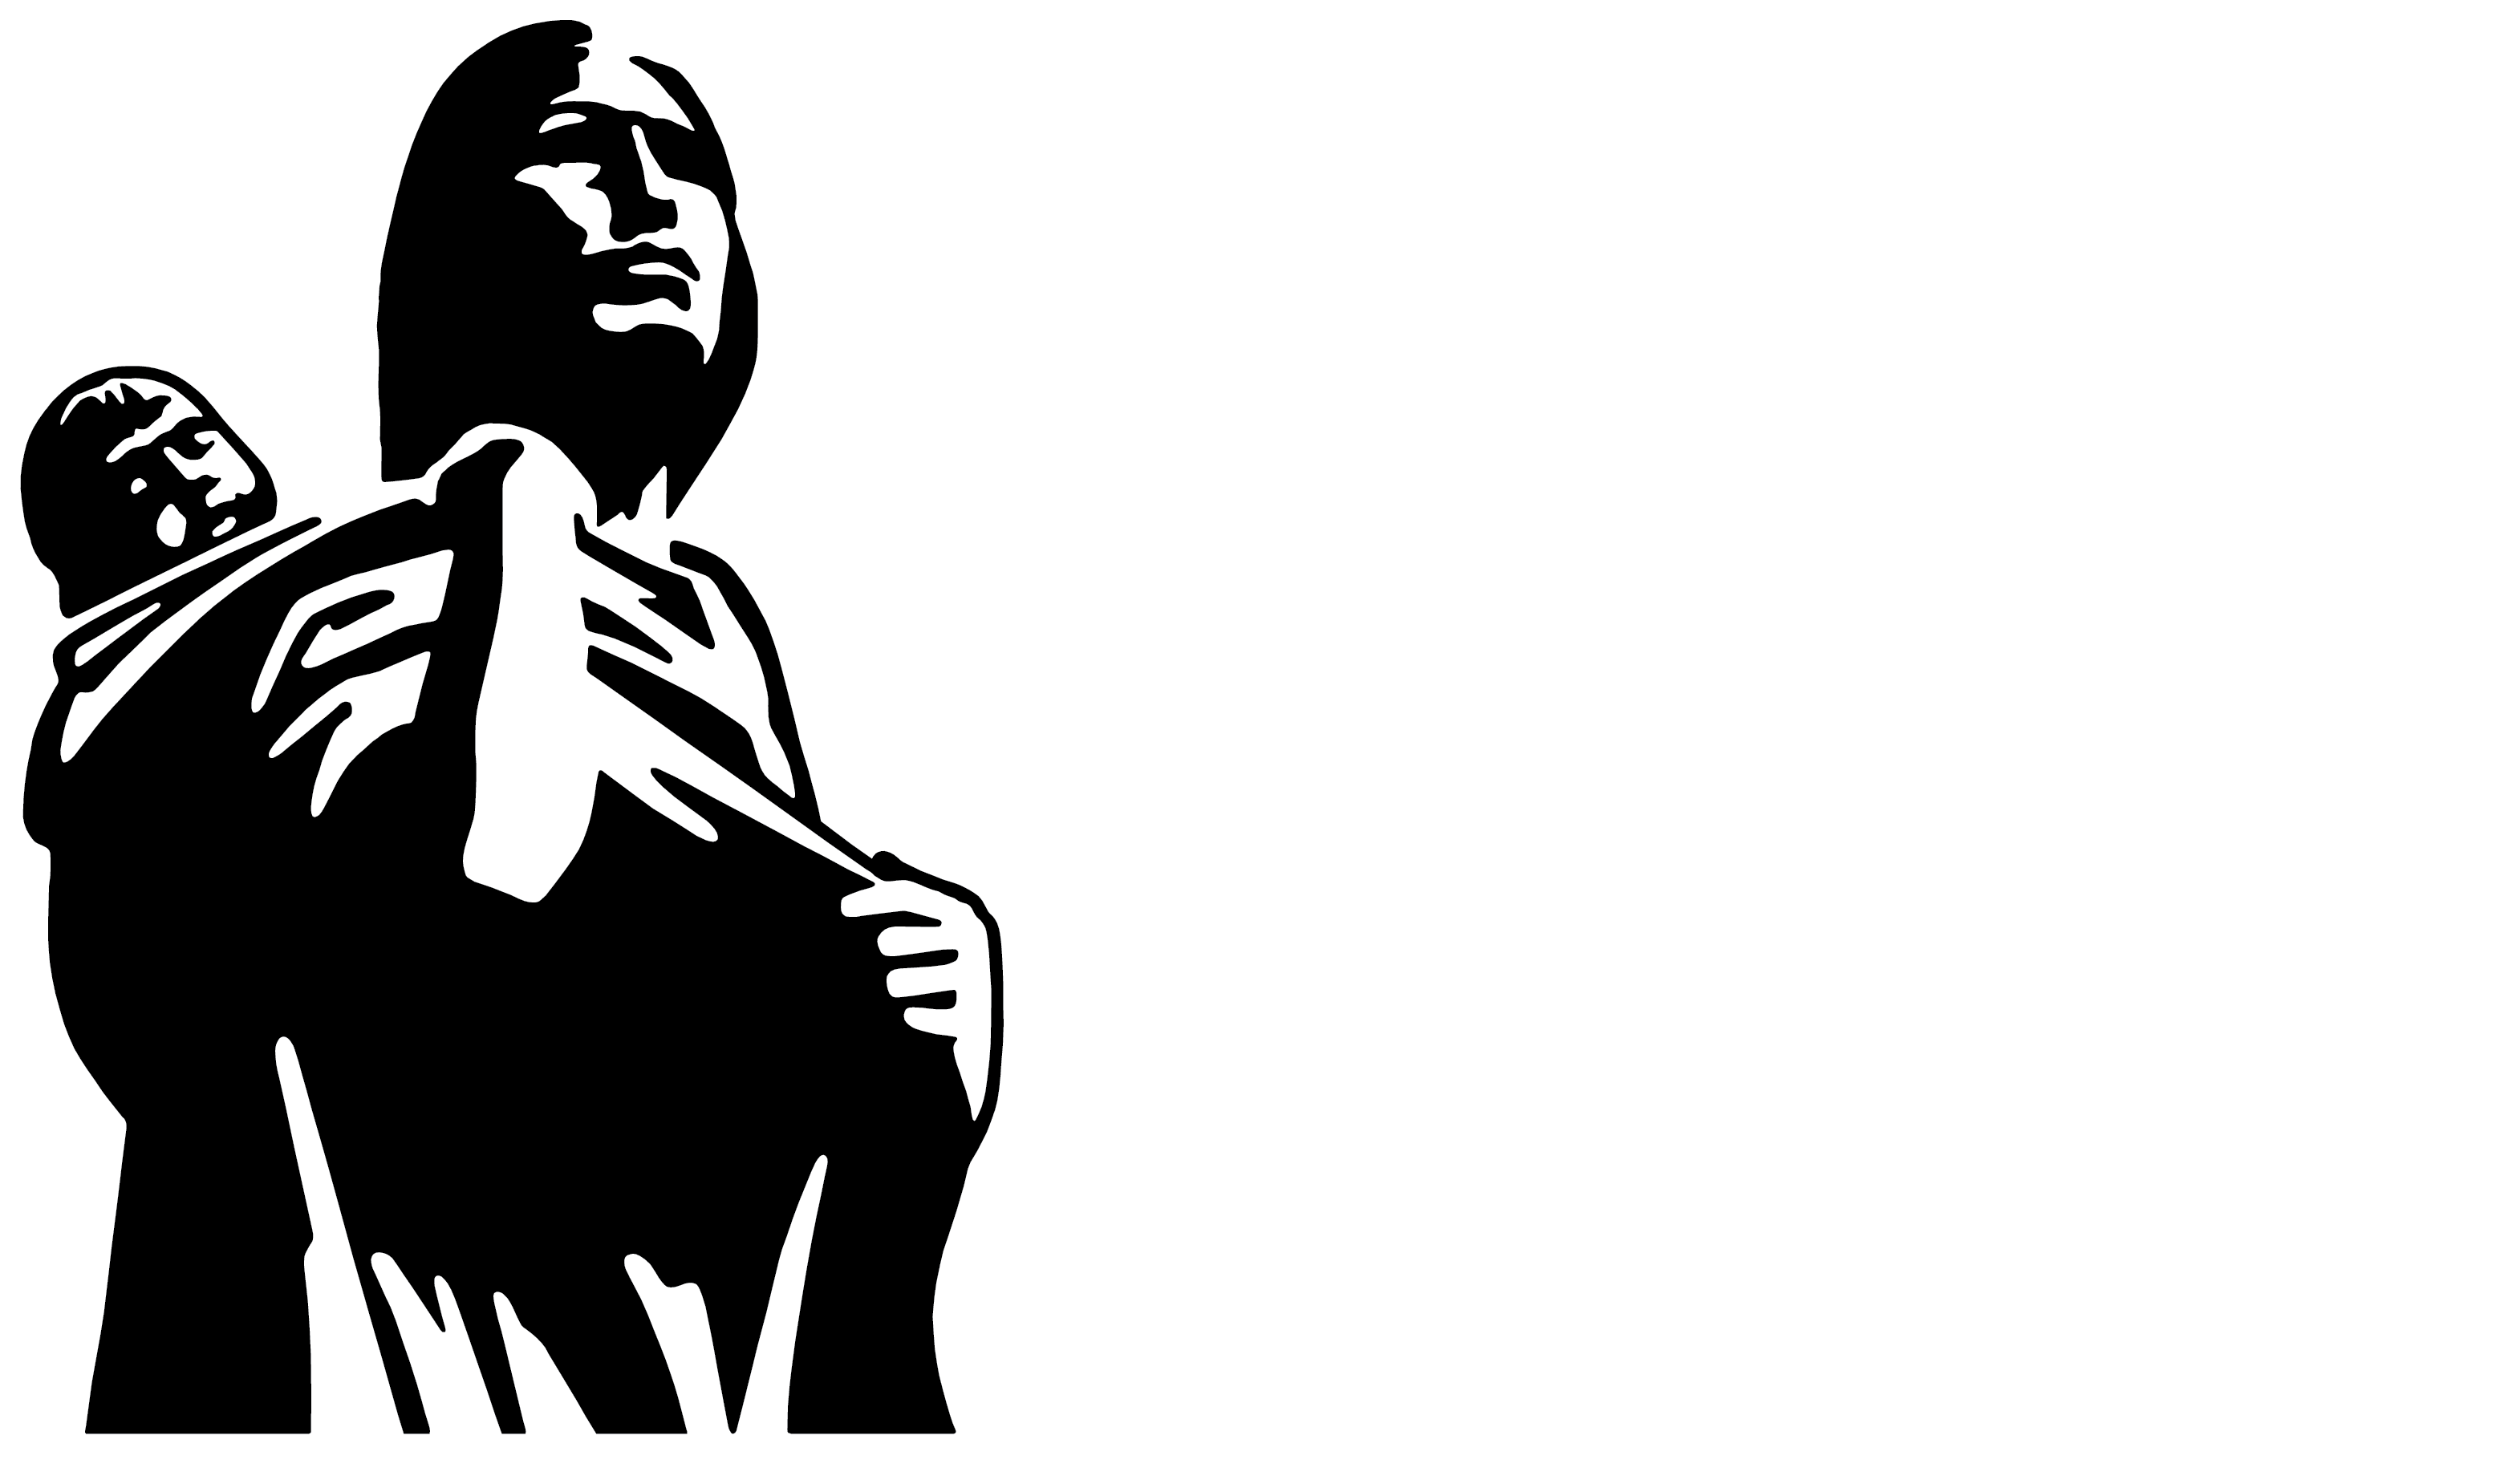 State Historical Society of North Dakota